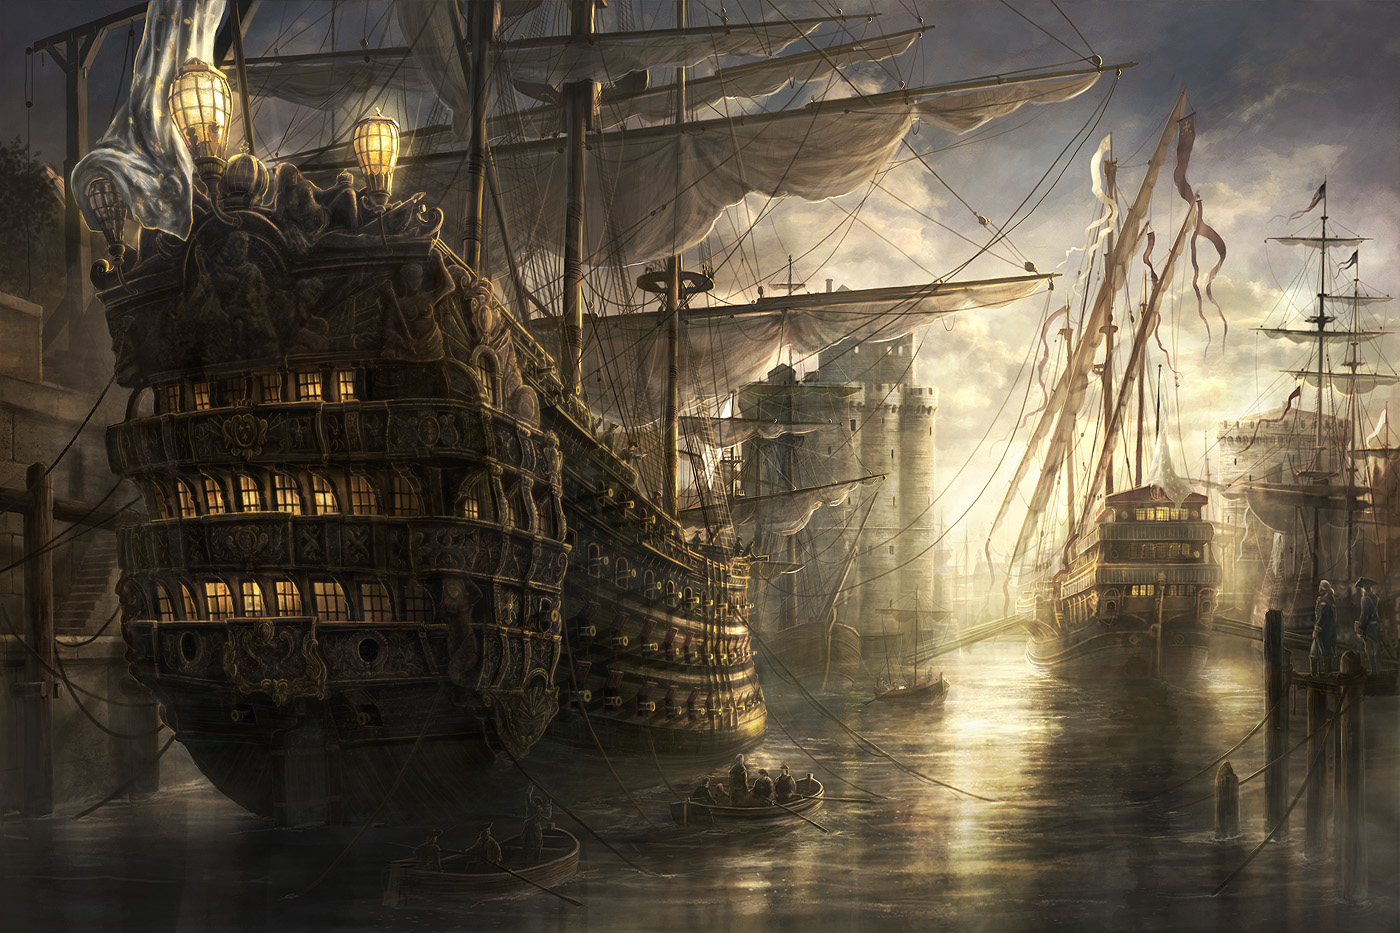 古い船の壁紙,帆船,一流,ガレオン船,輸送する,ラインの船